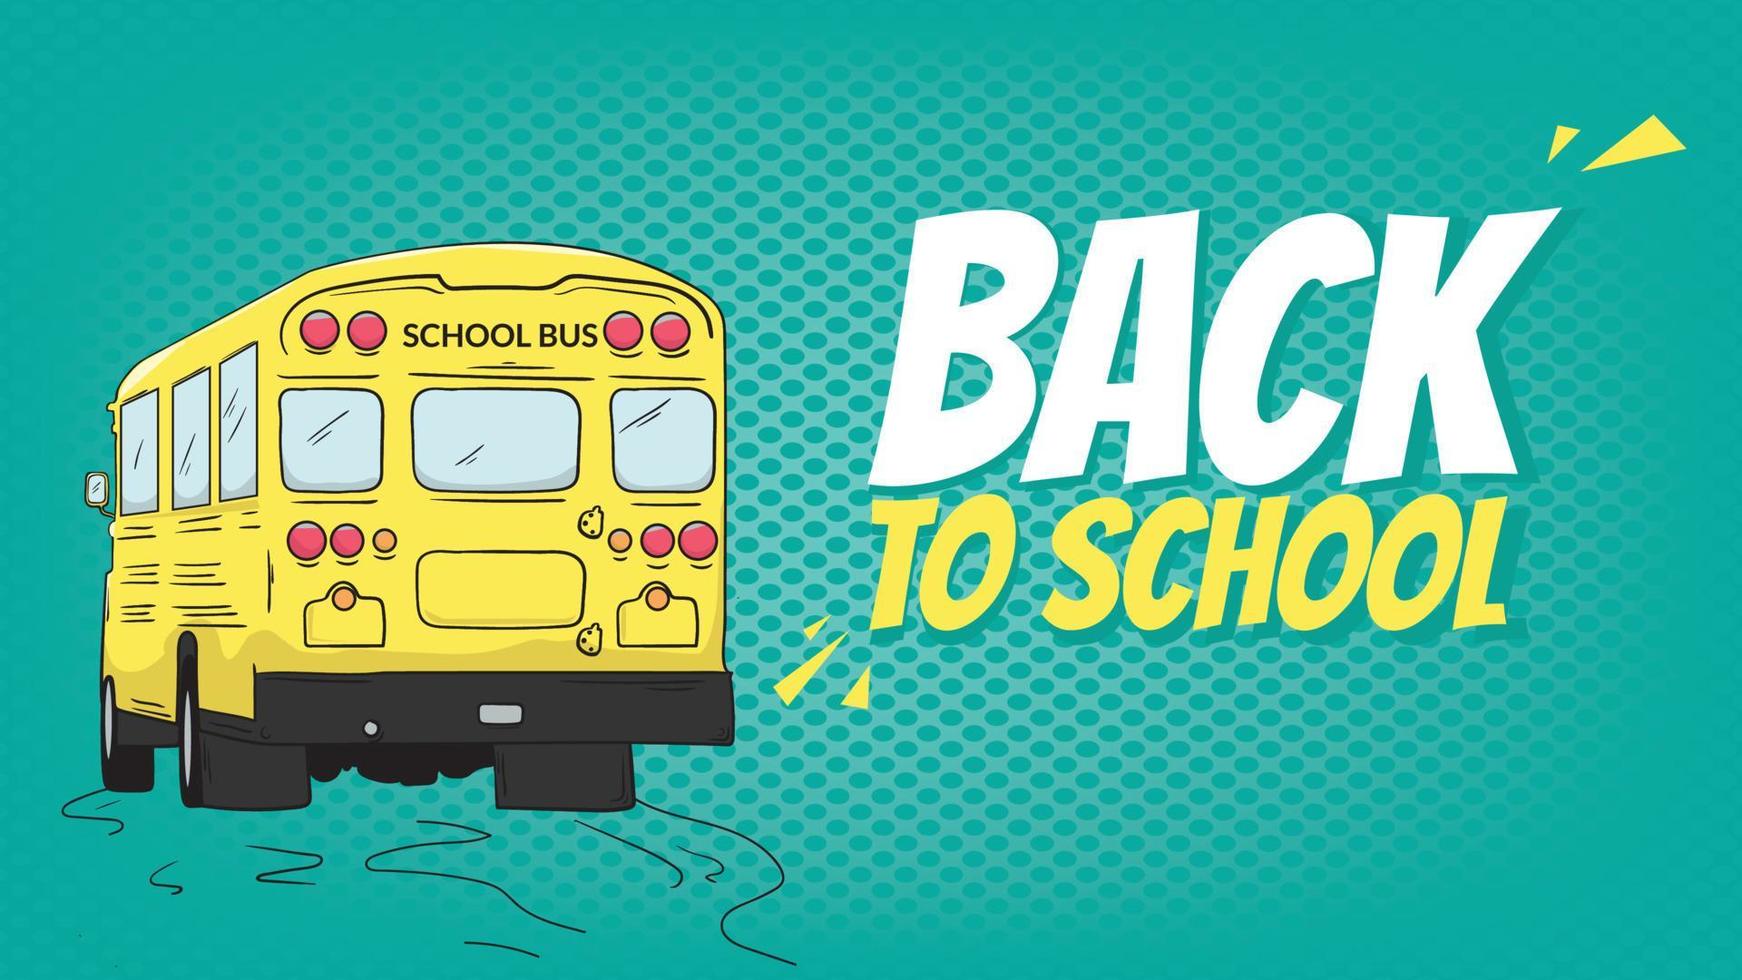 banner de regreso a la escuela en color de fondo verde de semitono. ilustración del autobús escolar, bueno para el banner de anuncios. vector